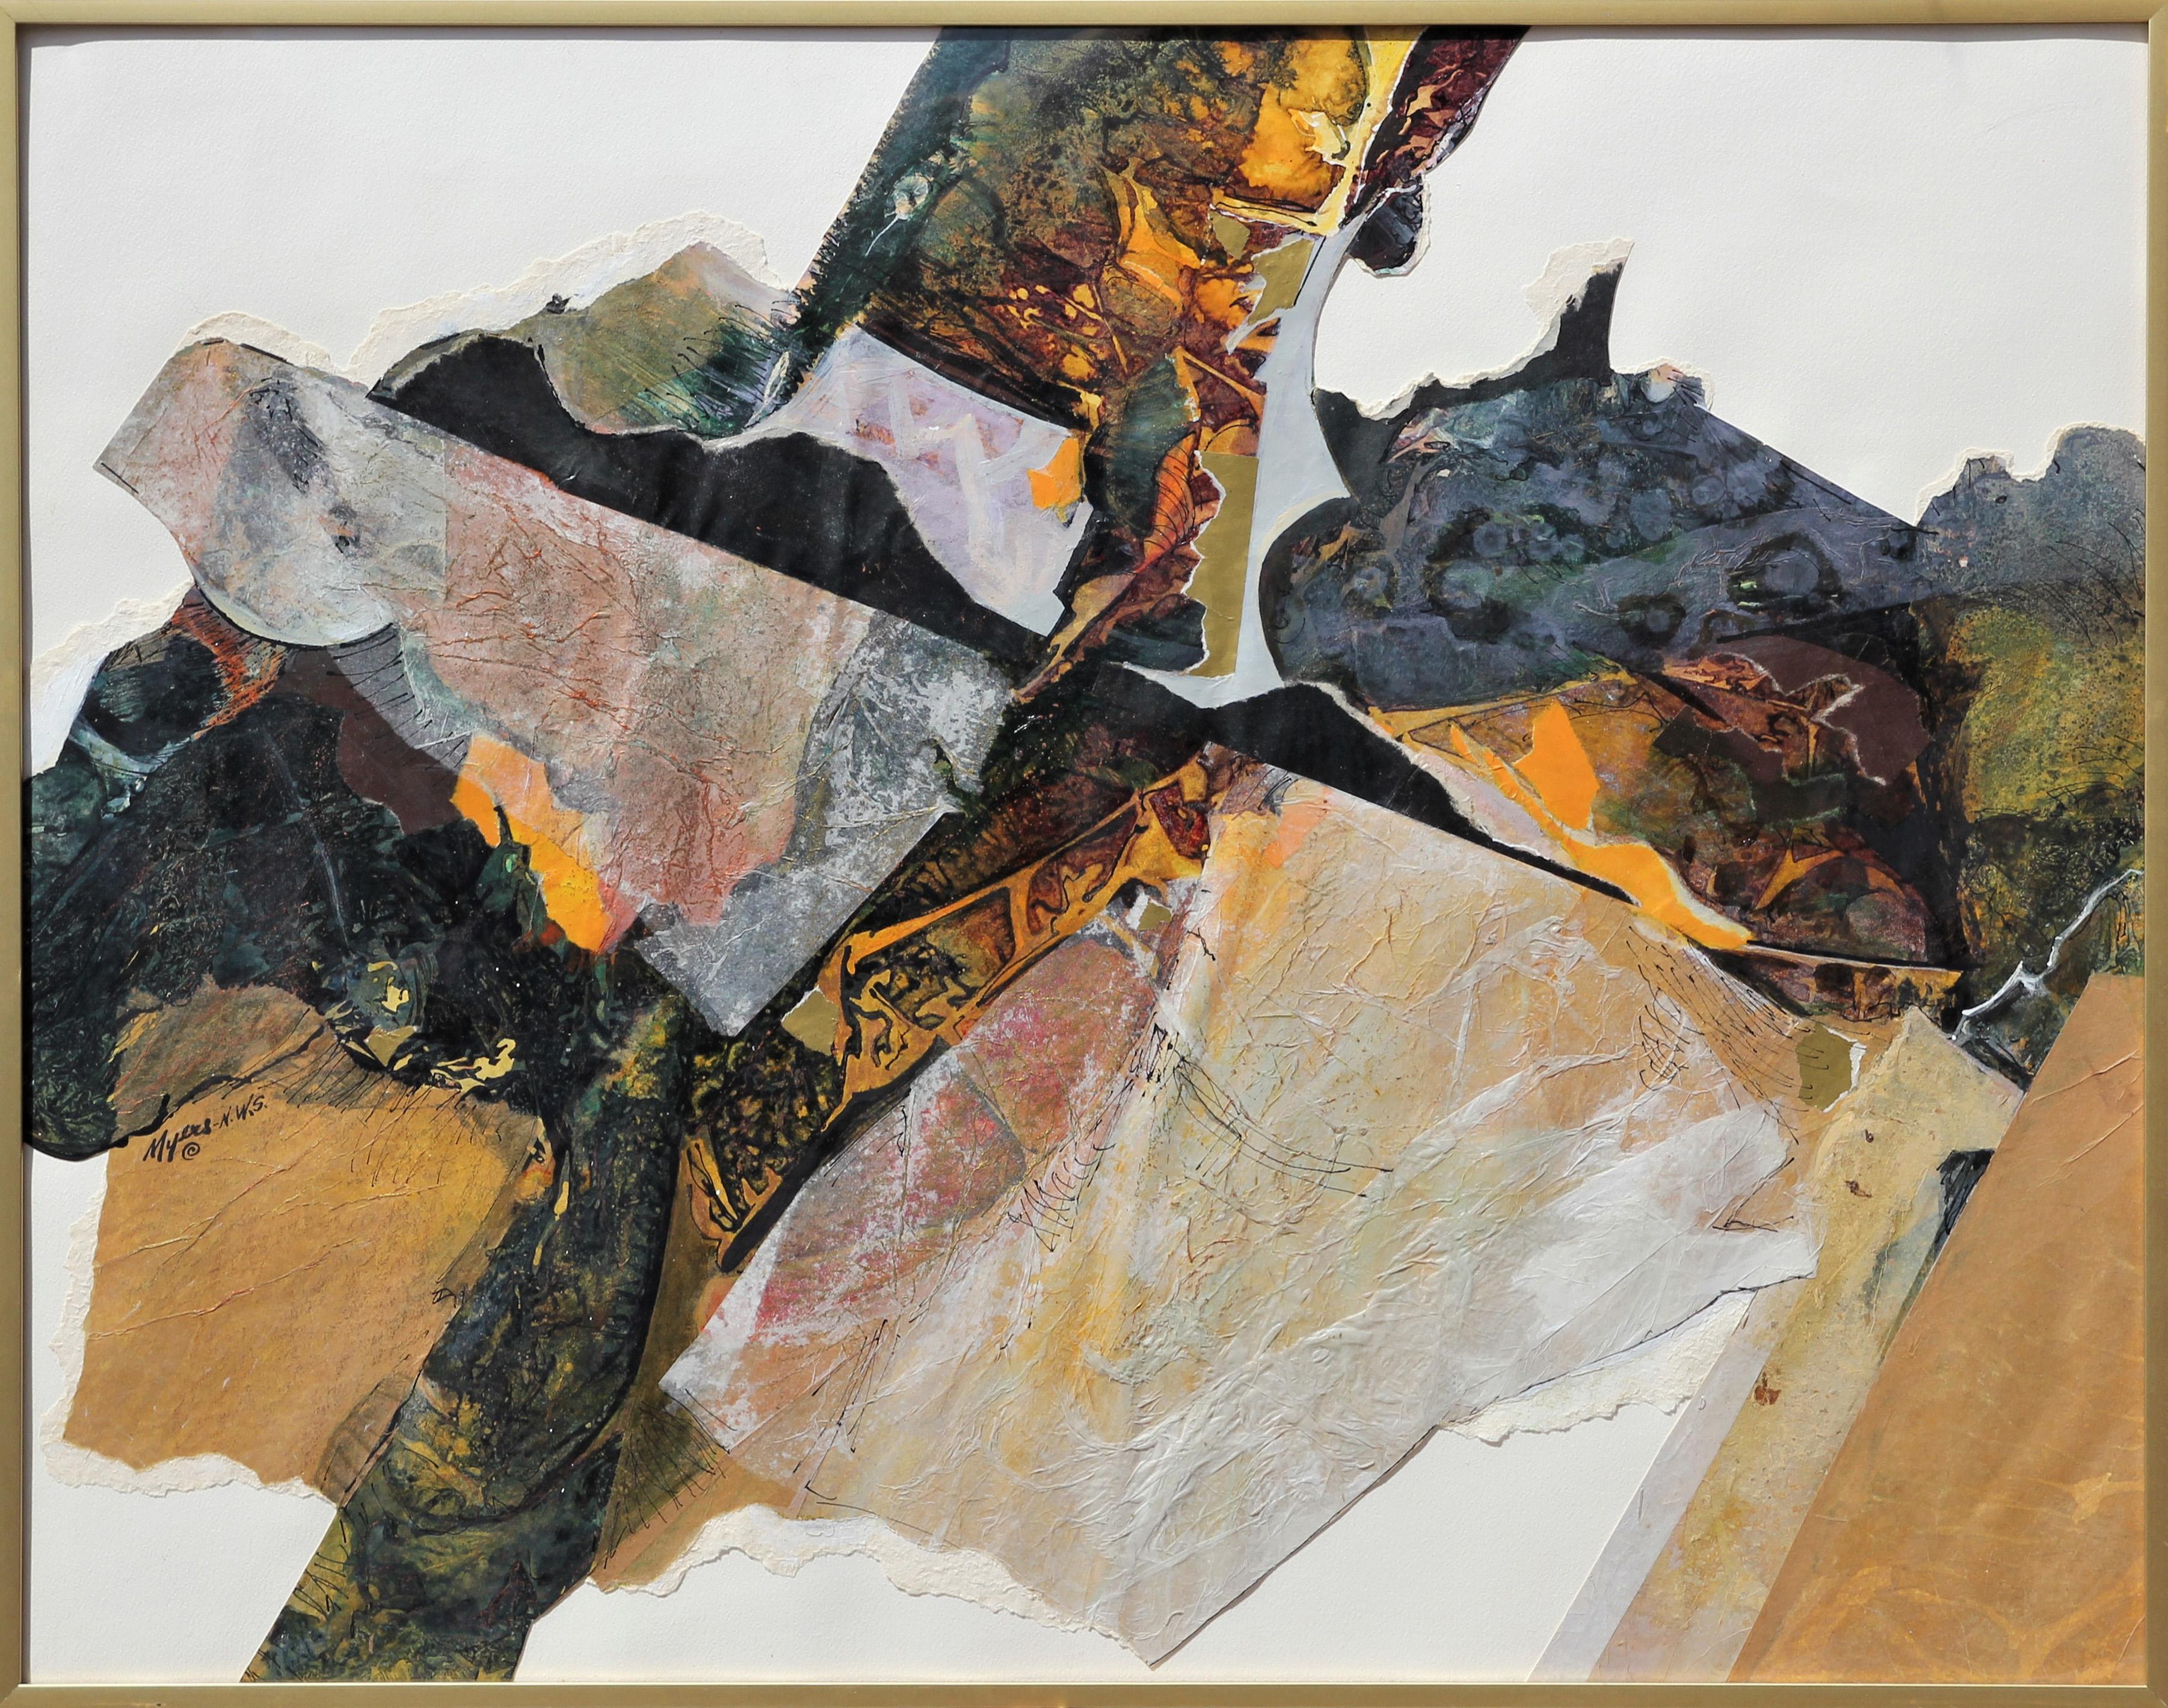 ""Fragments" Peinture moderne texturée de supports mixtes abstraits et neutres